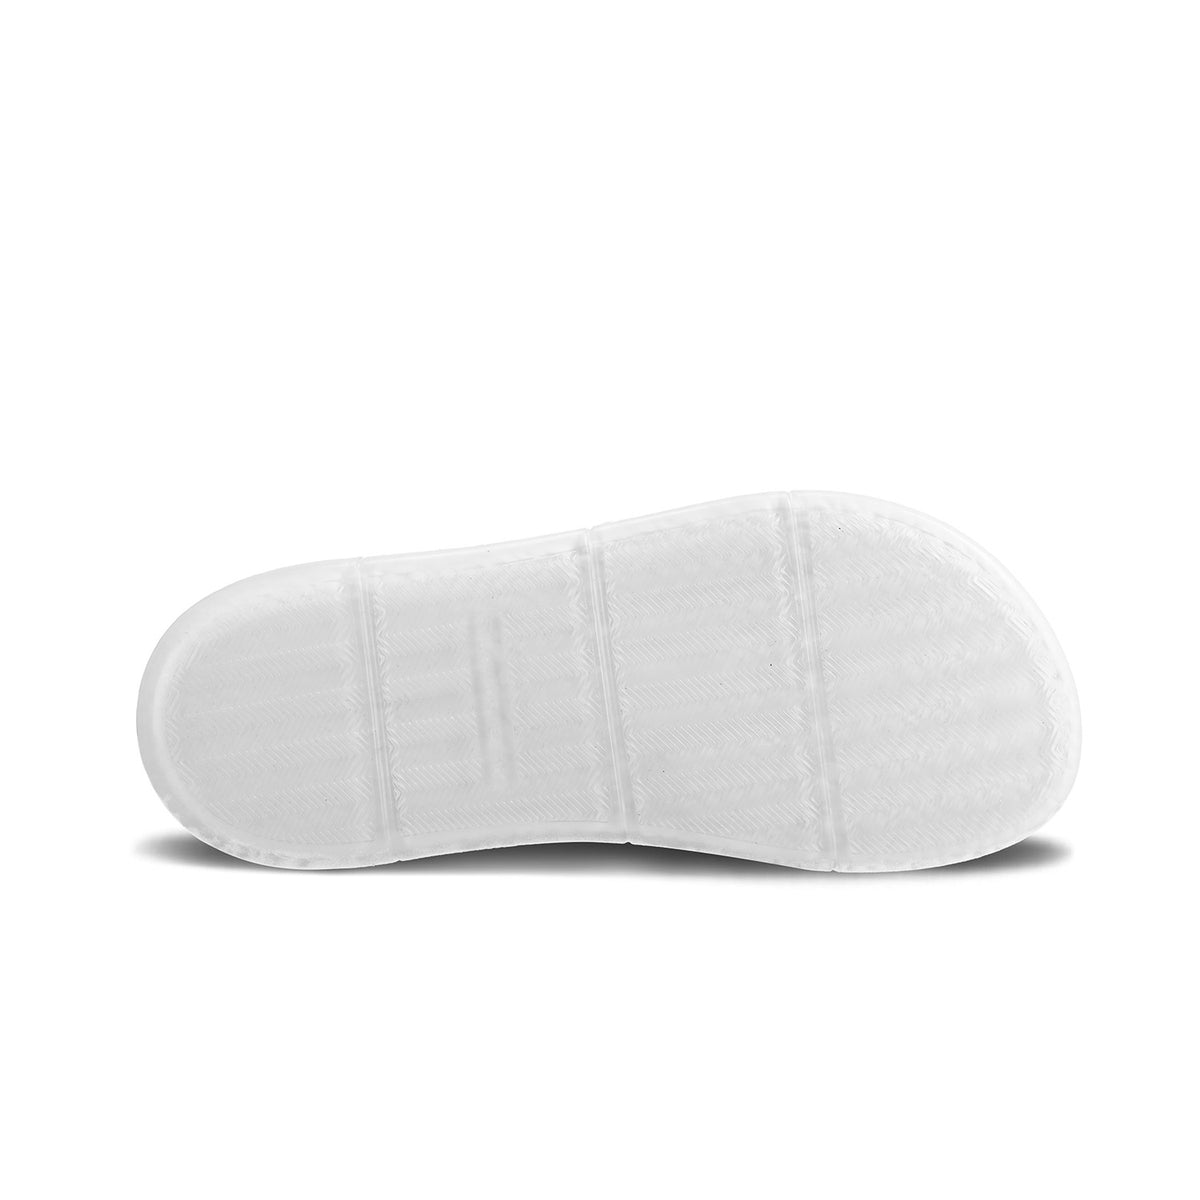 Barefoot Sneakers Barebarics Futura - Iridescent White 6  - OzBarefoot